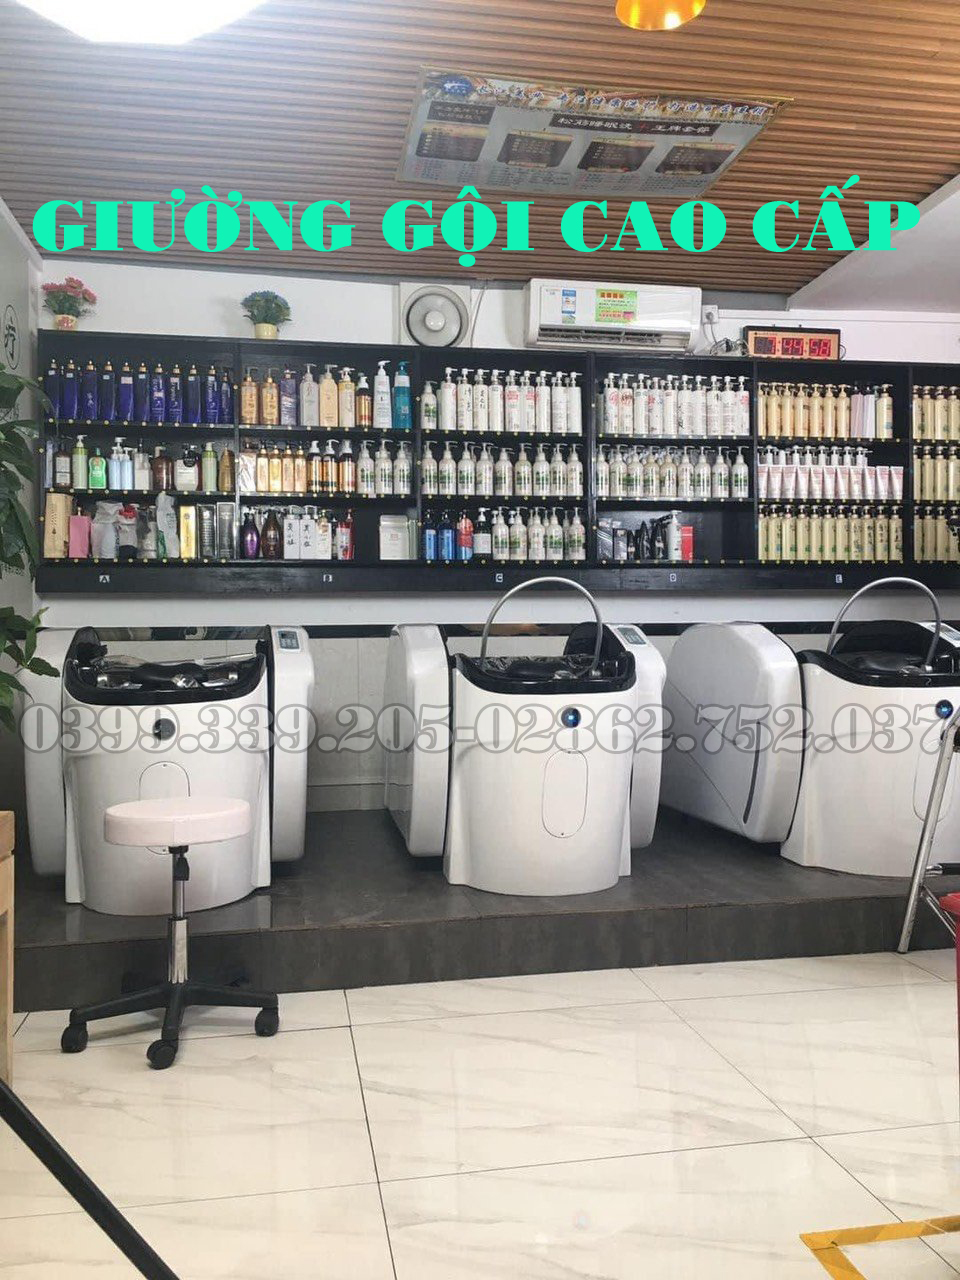 GIUONG GOI CAO CAP